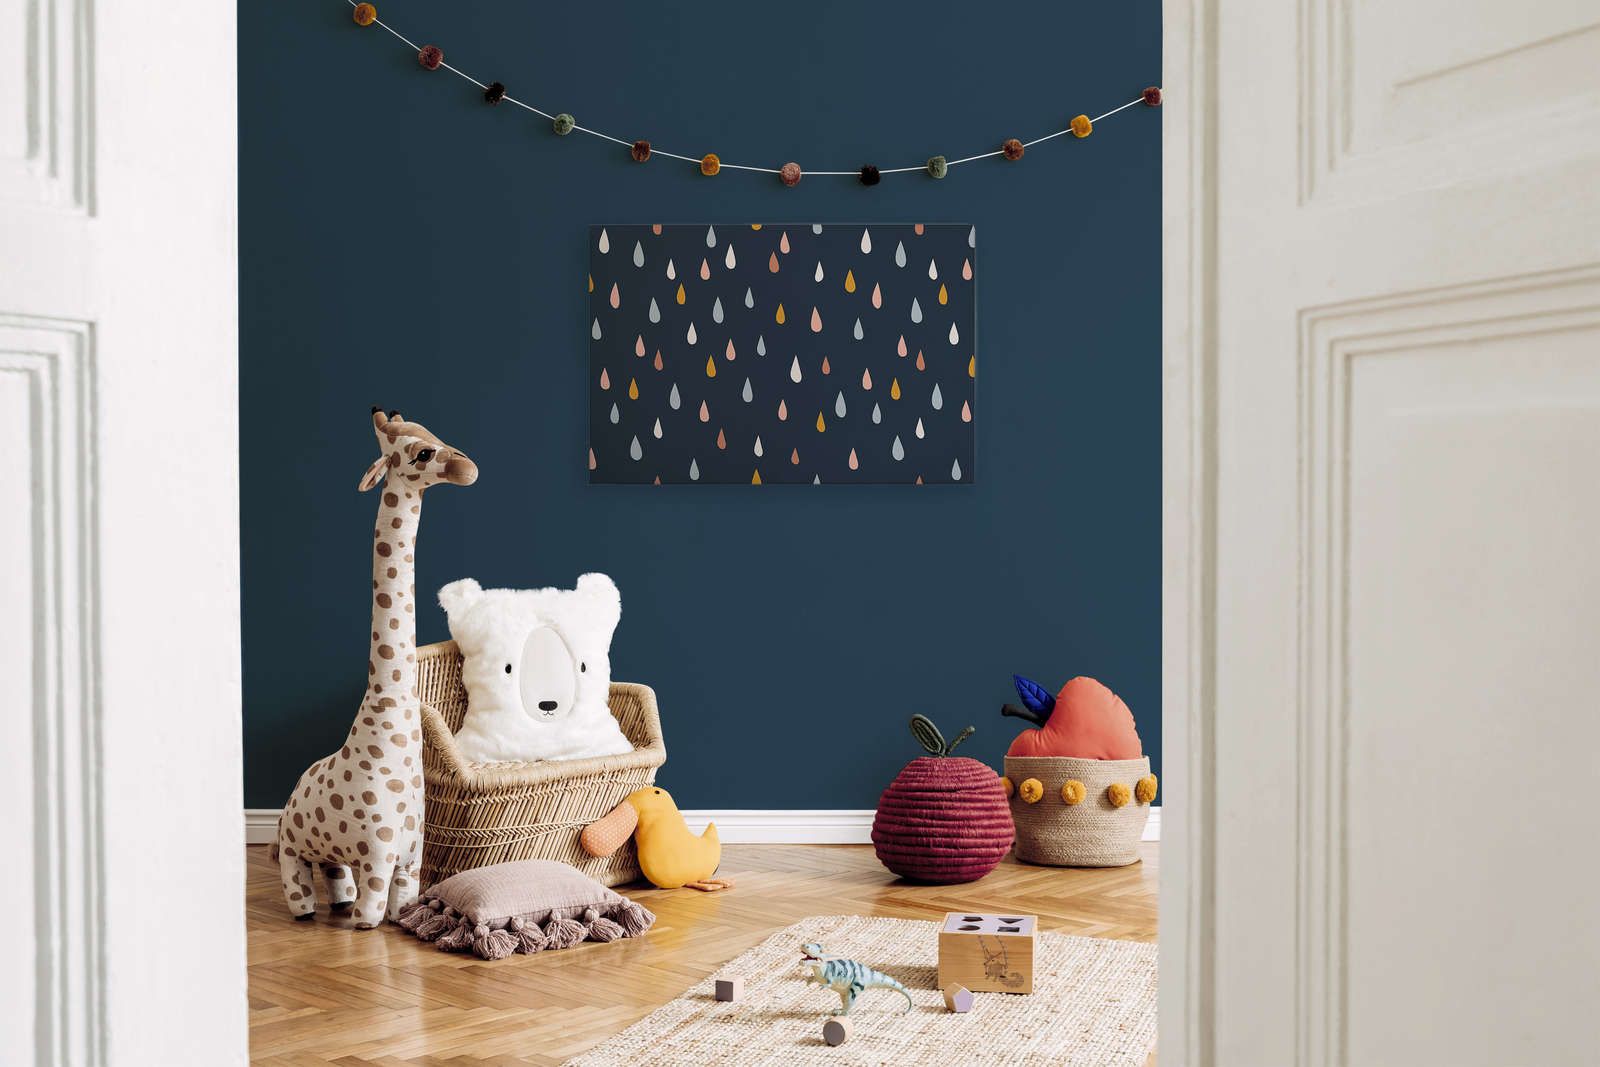             Leinwand fürs Kinderzimmer mit bunten Tropfen – 90 cm x 60 cm
        